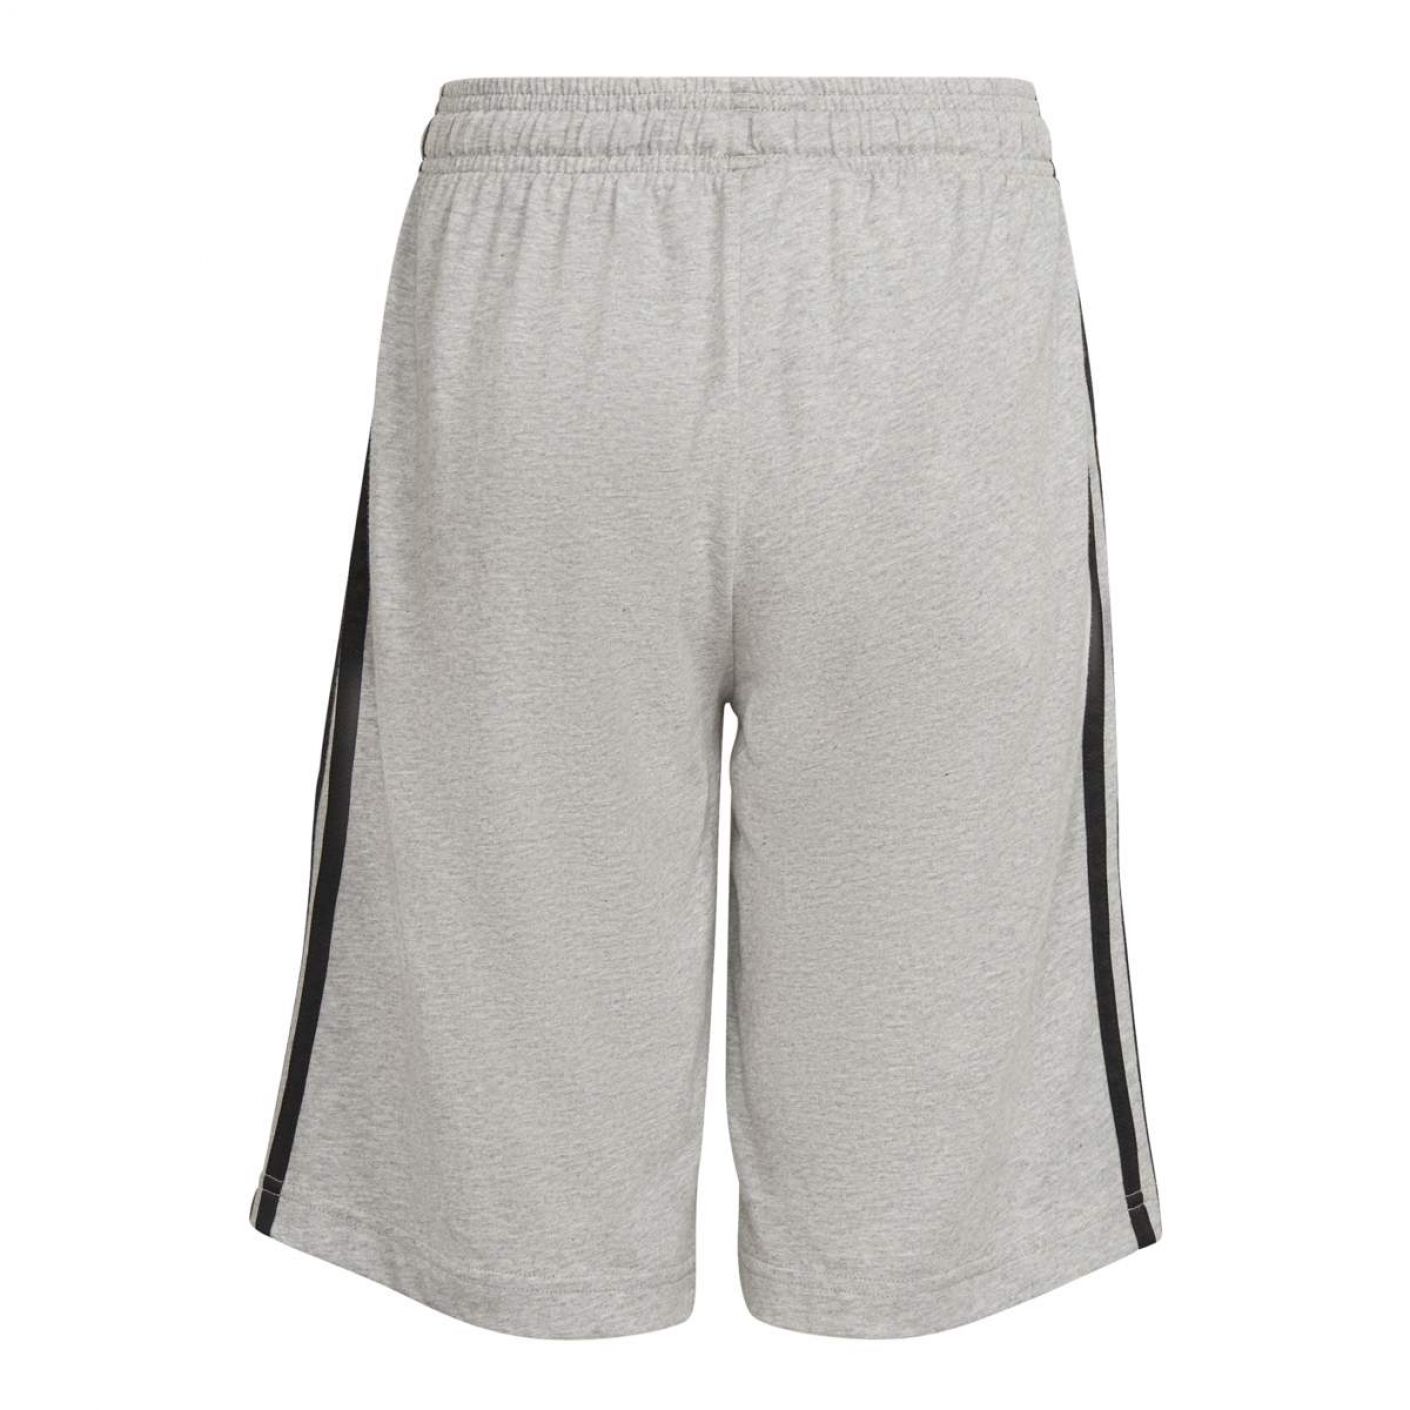 Adidas Boys Essentials 3 Stripes Shorts